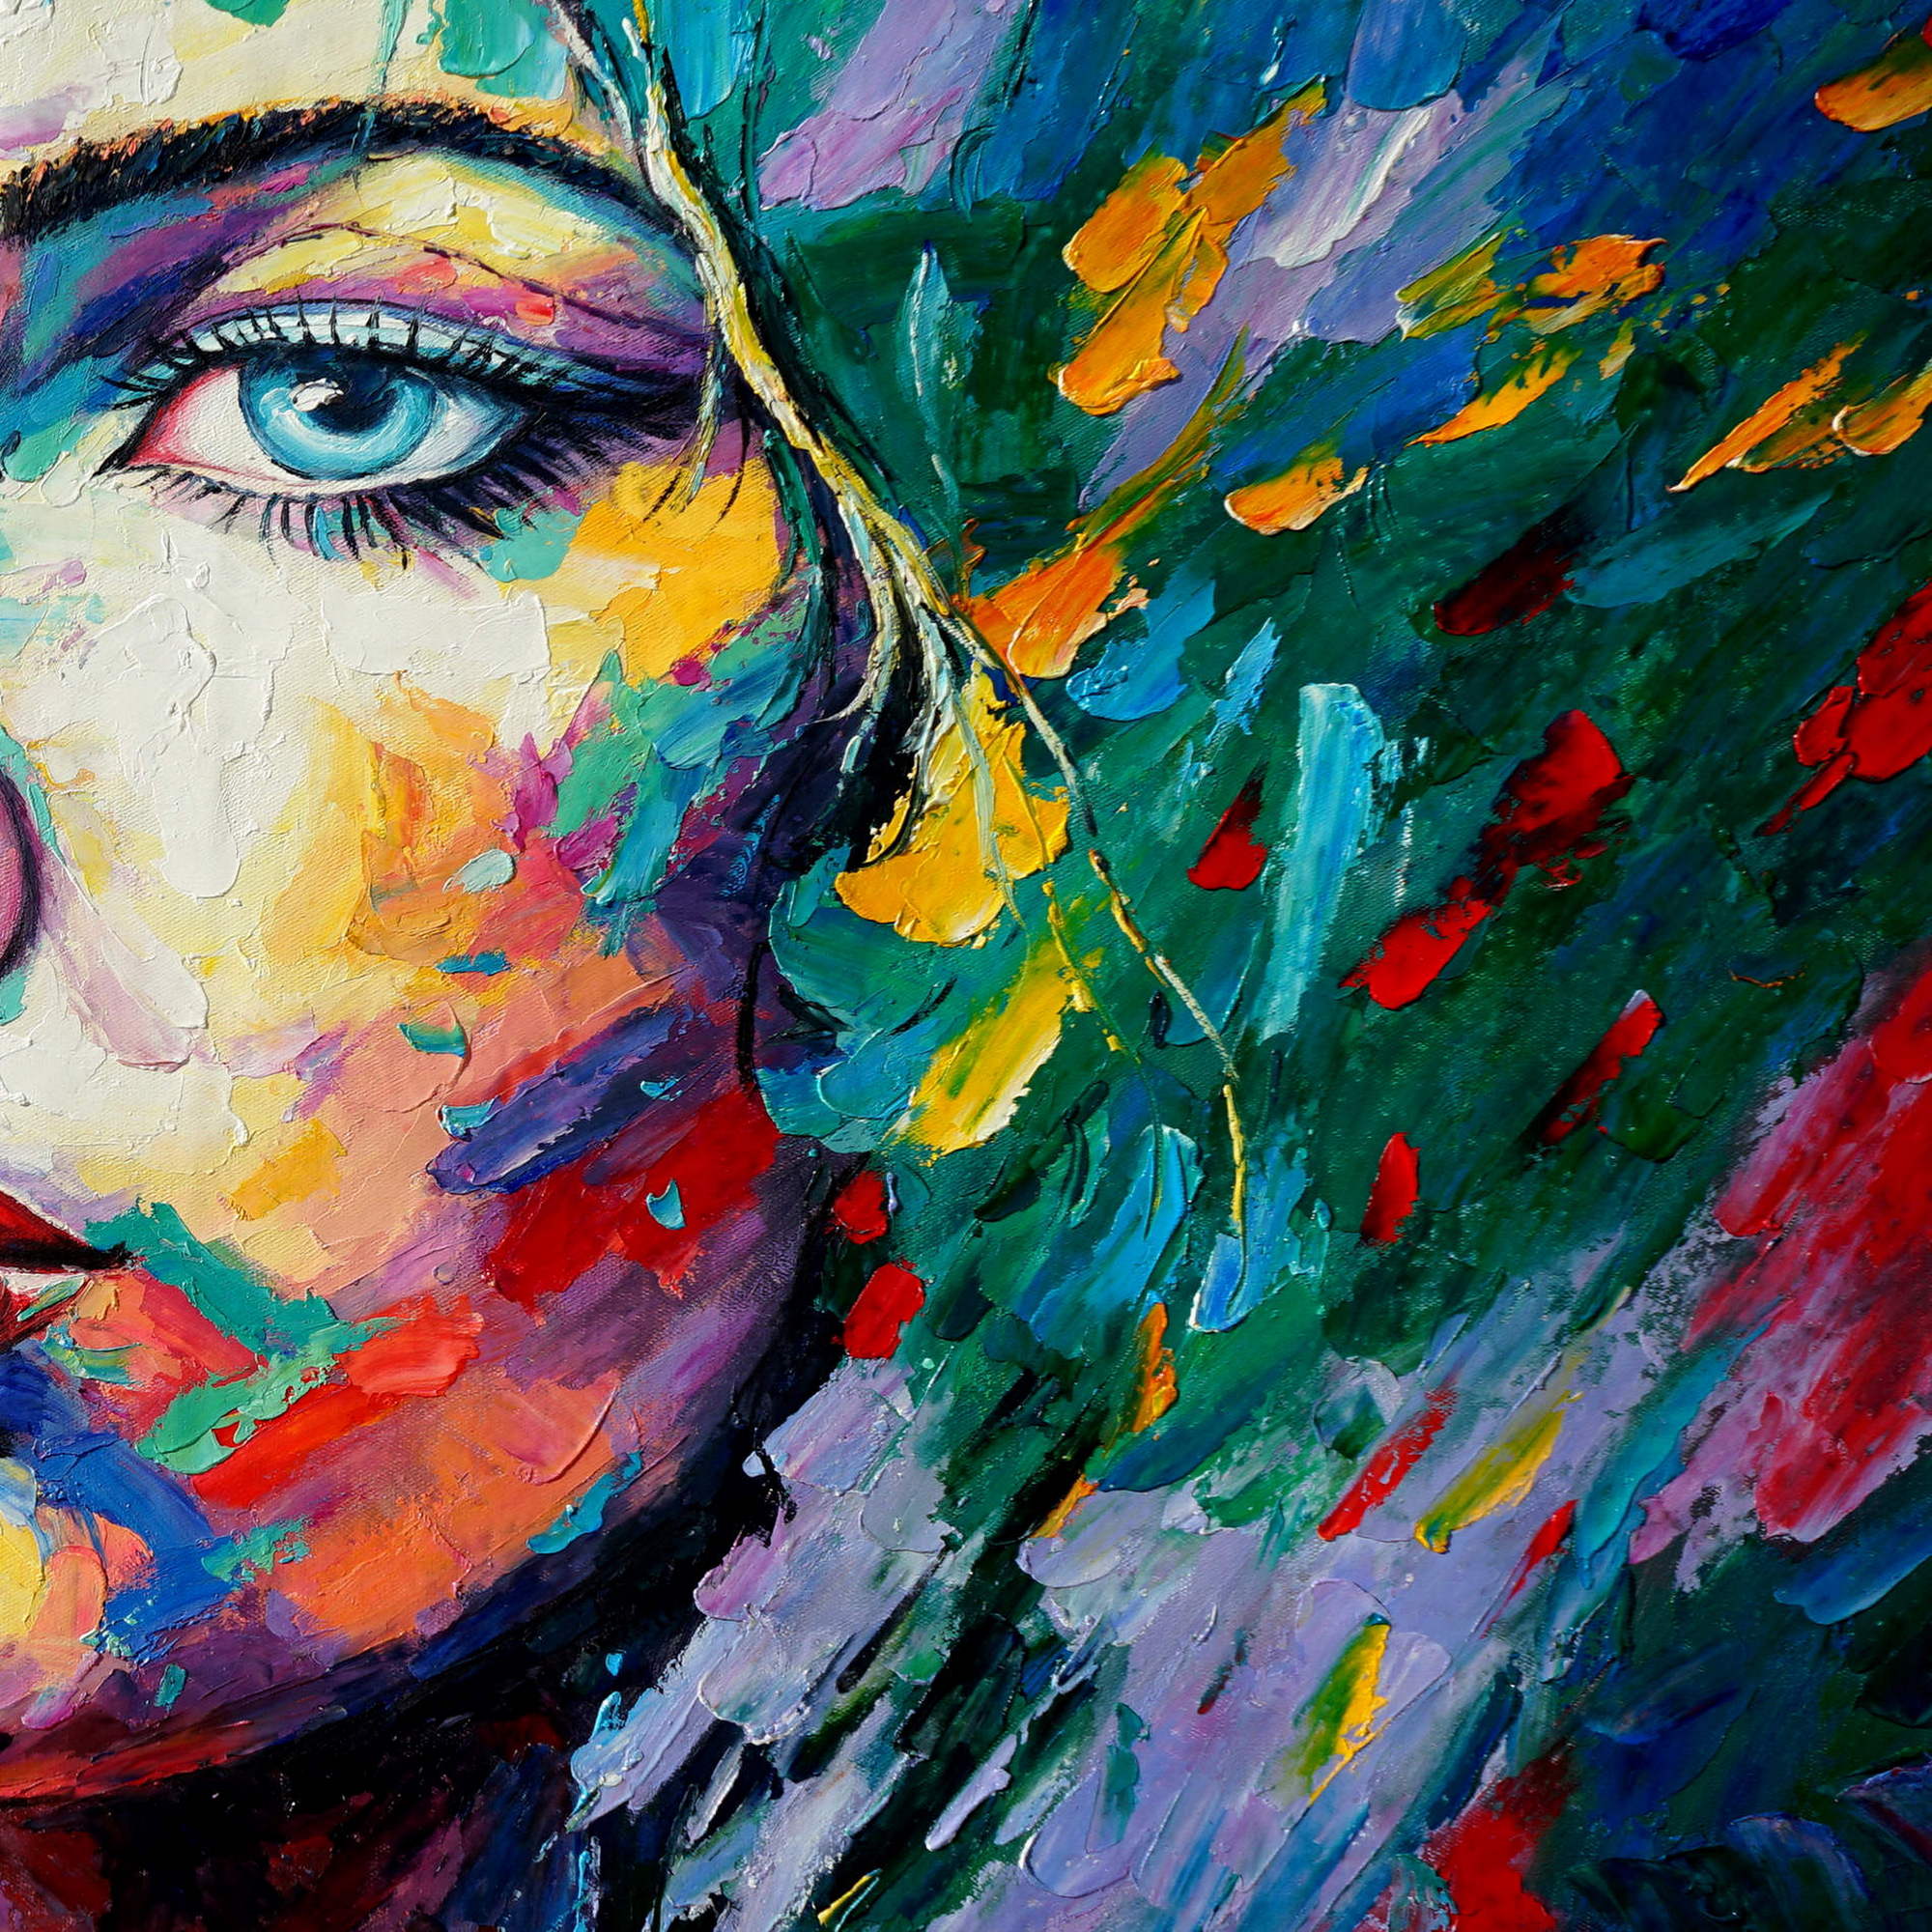 Portrait de femme abstrait peint à la main 60x120cm